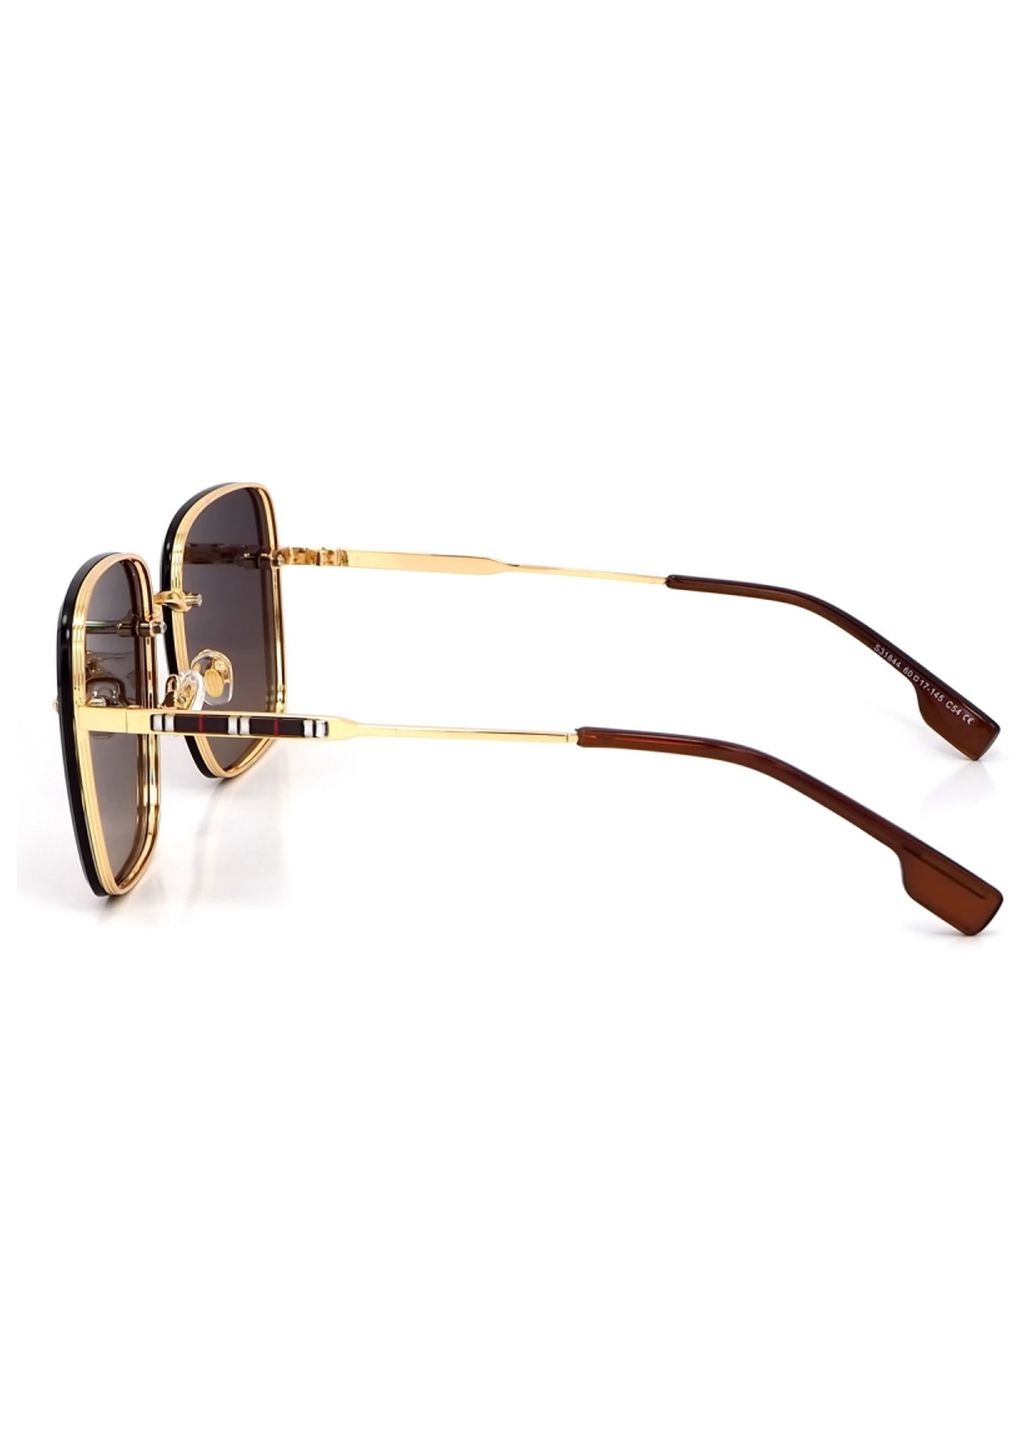 Купить Женские солнцезащитные очки Merlini с поляризацией S31844 117133 - Золотистый в интернет-магазине